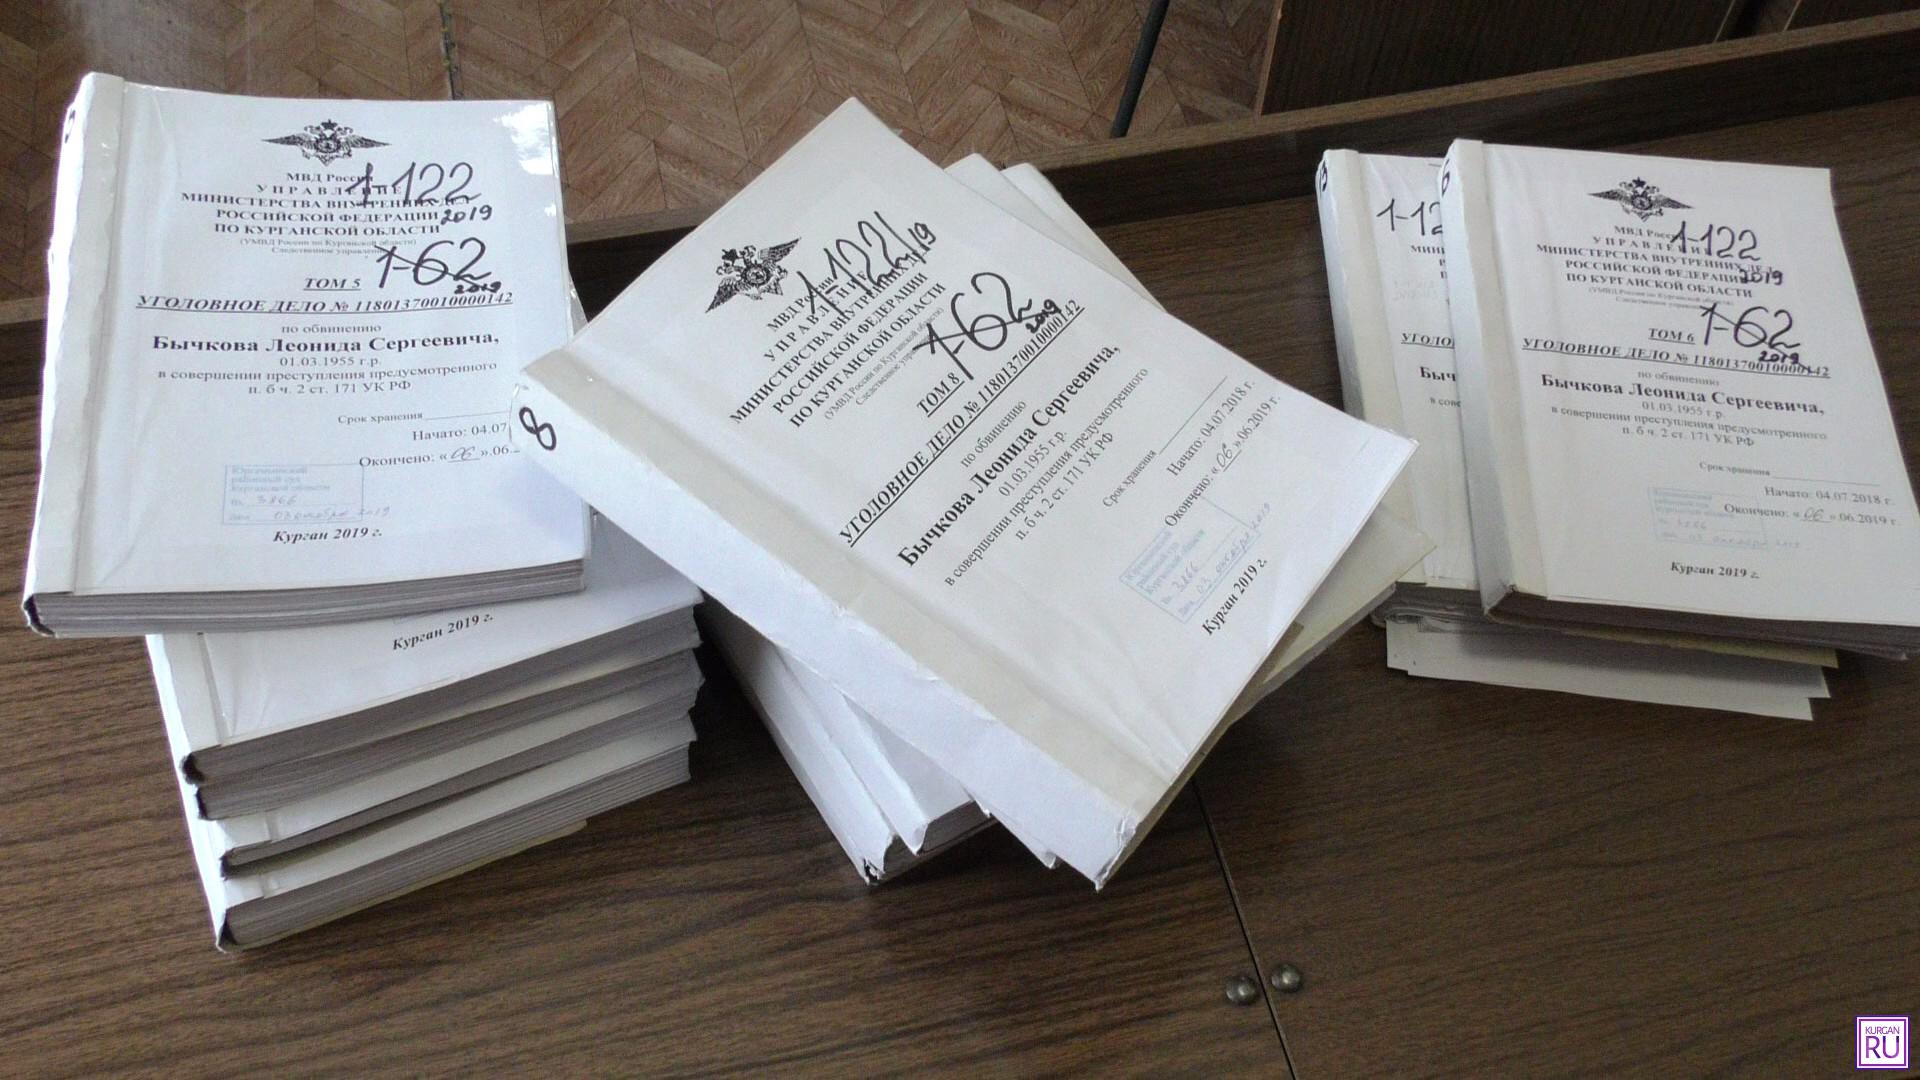 Уголовное дело Леонида Бычкова насчитывает более 10 томов. Фото Информационного агентства «KURGAN.RU».